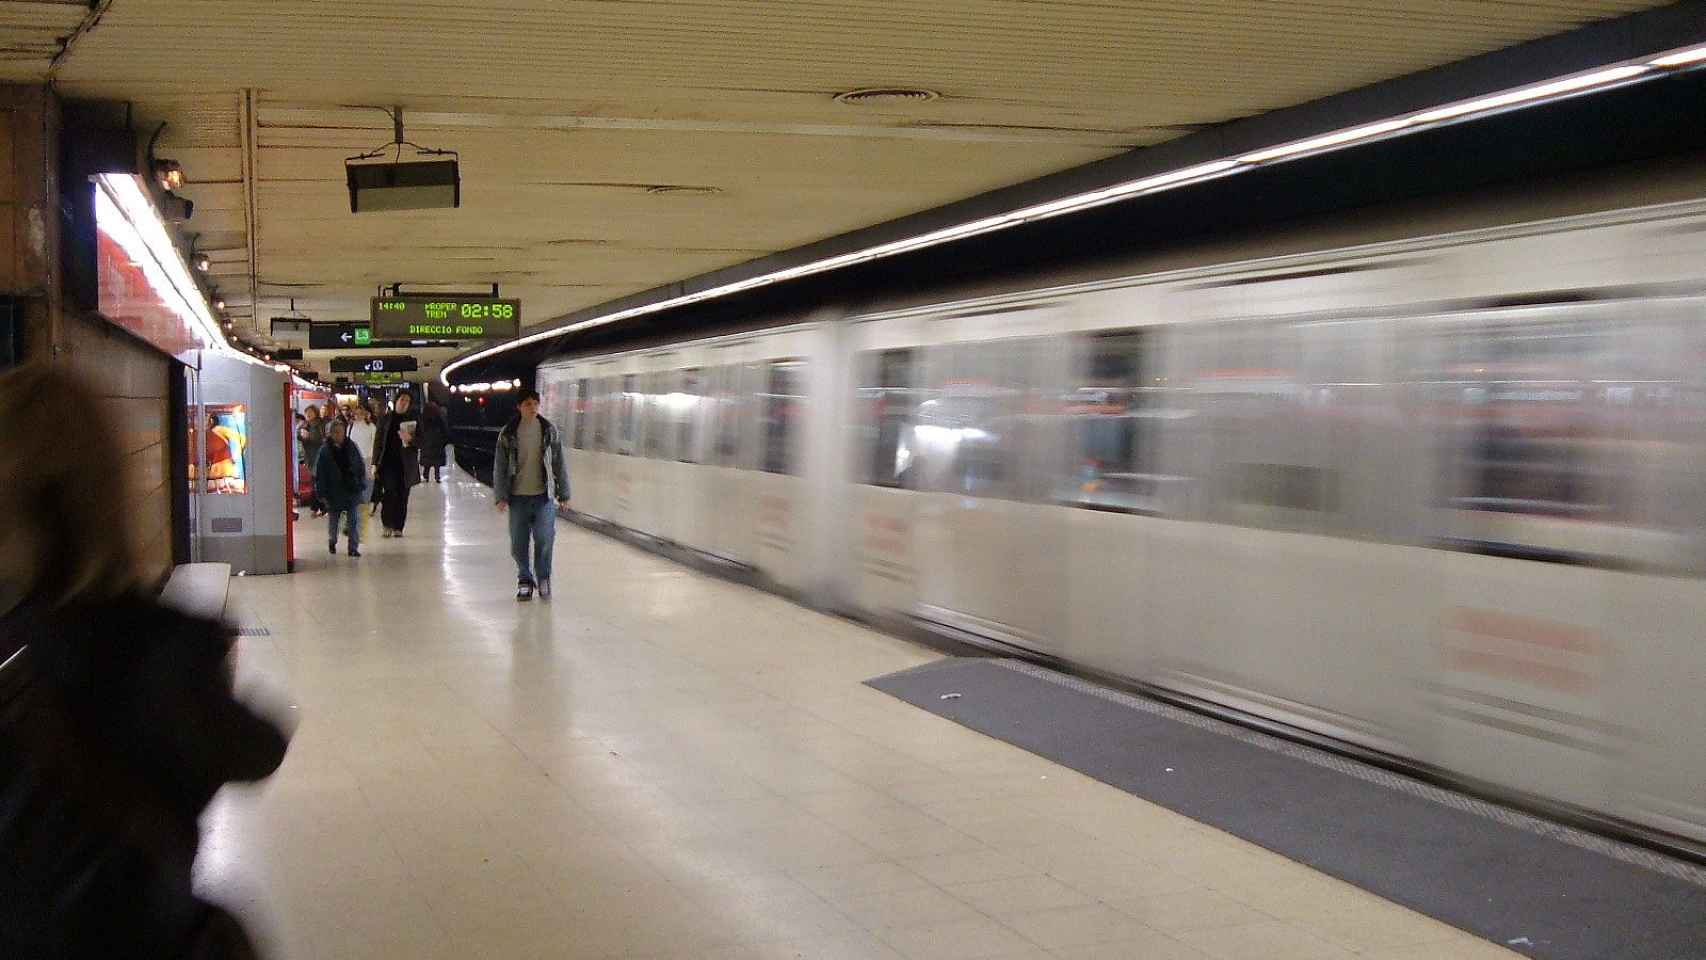 La estación de metro de plaza Cataluña, donde ha habido un incendio / CG